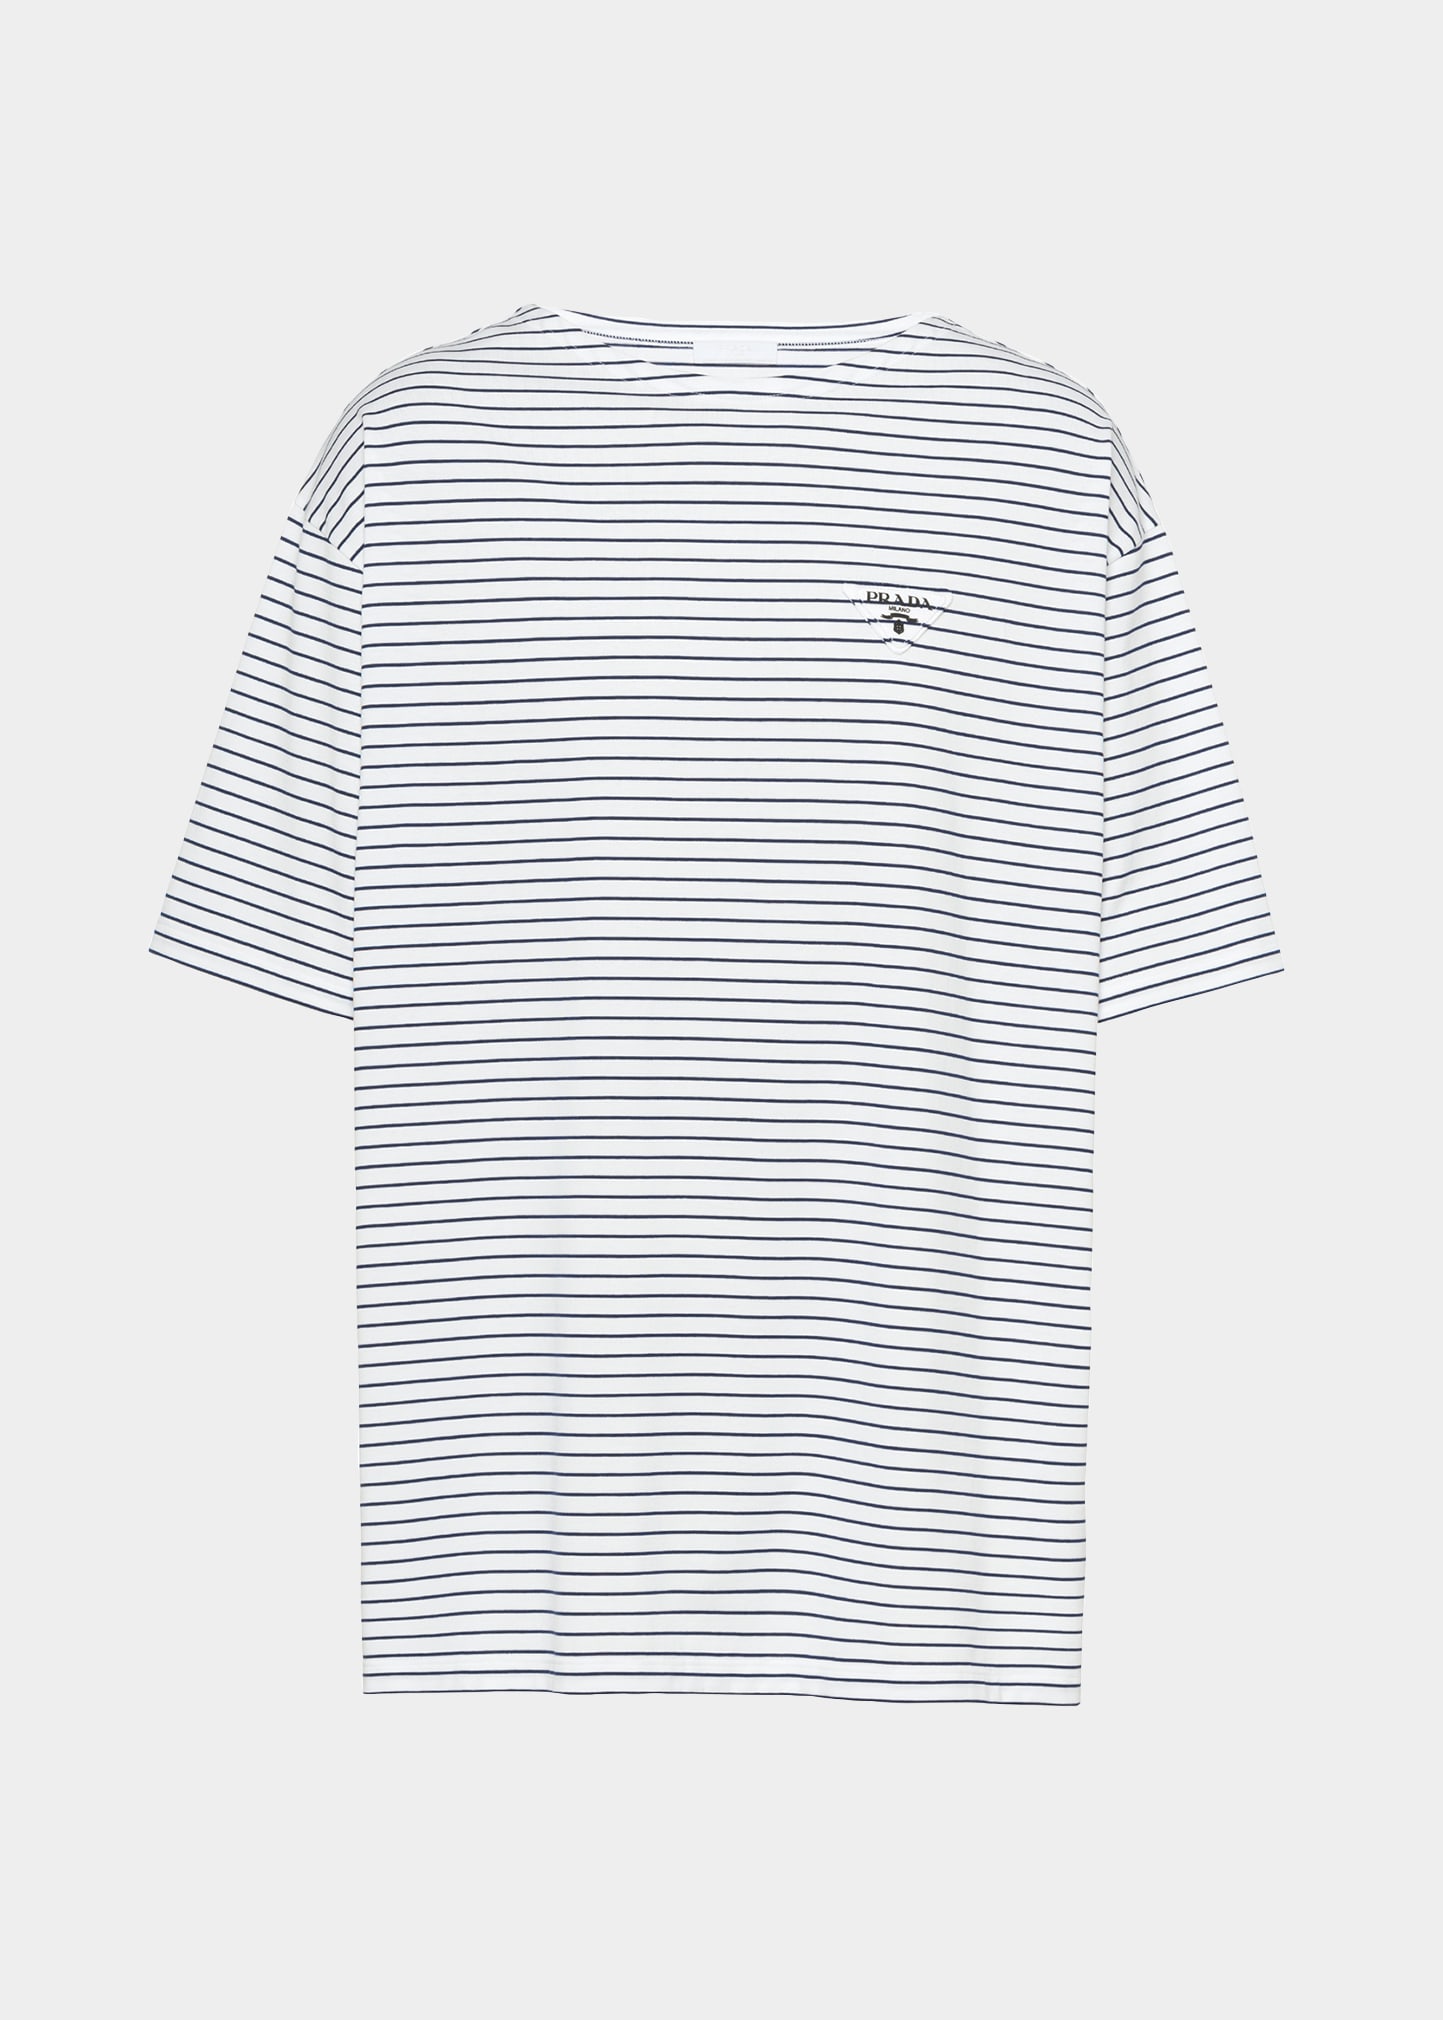 Men's Oversized Striped T-Shirt